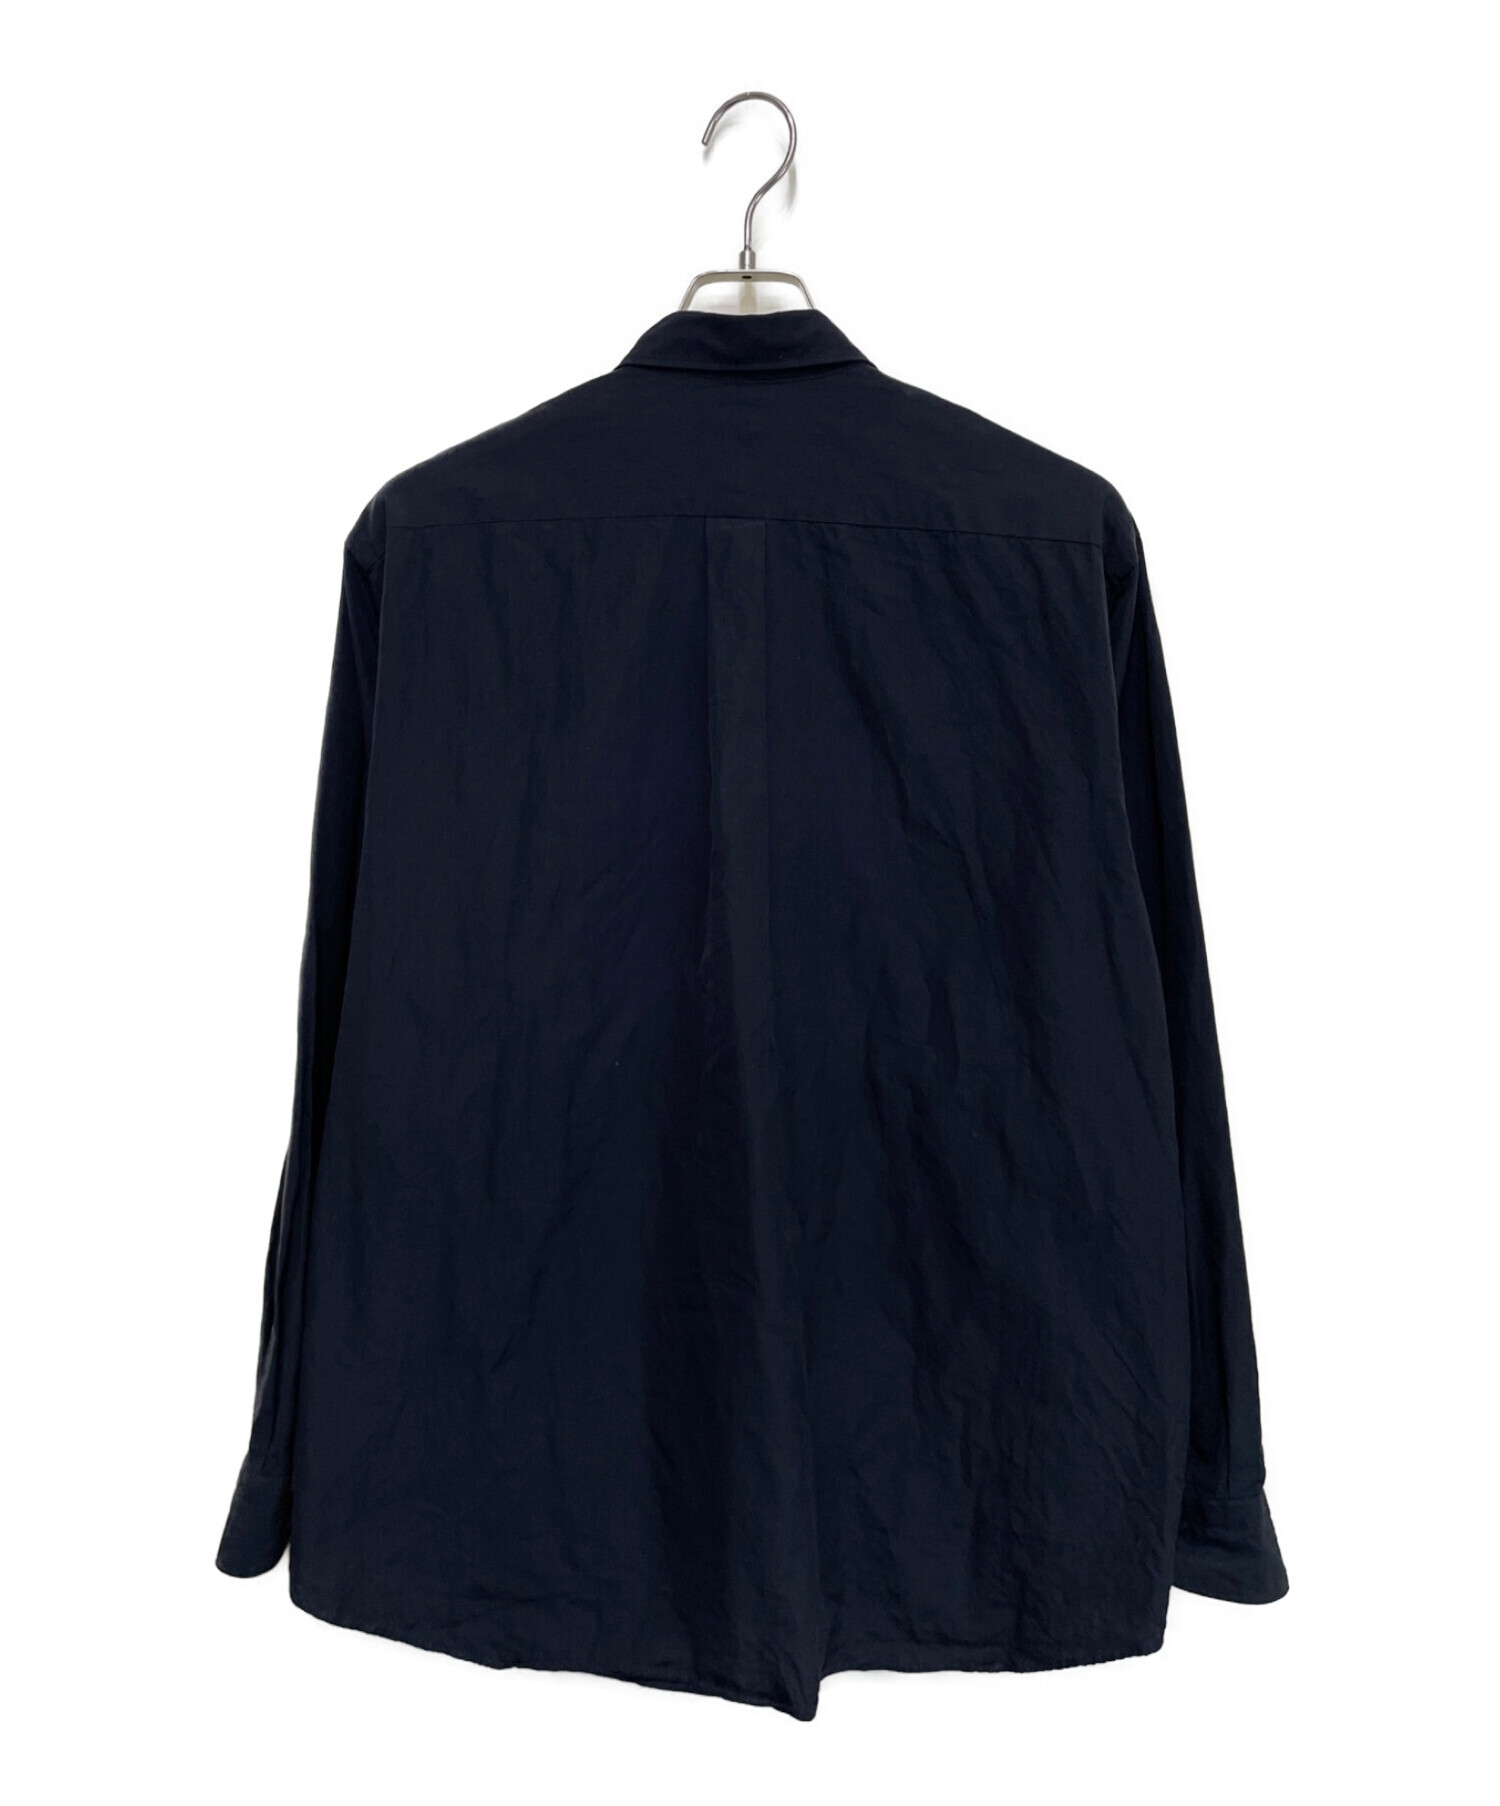 22ss V01-02001 青山直営店限定 黒 コモリシャツ ブラック - シャツ